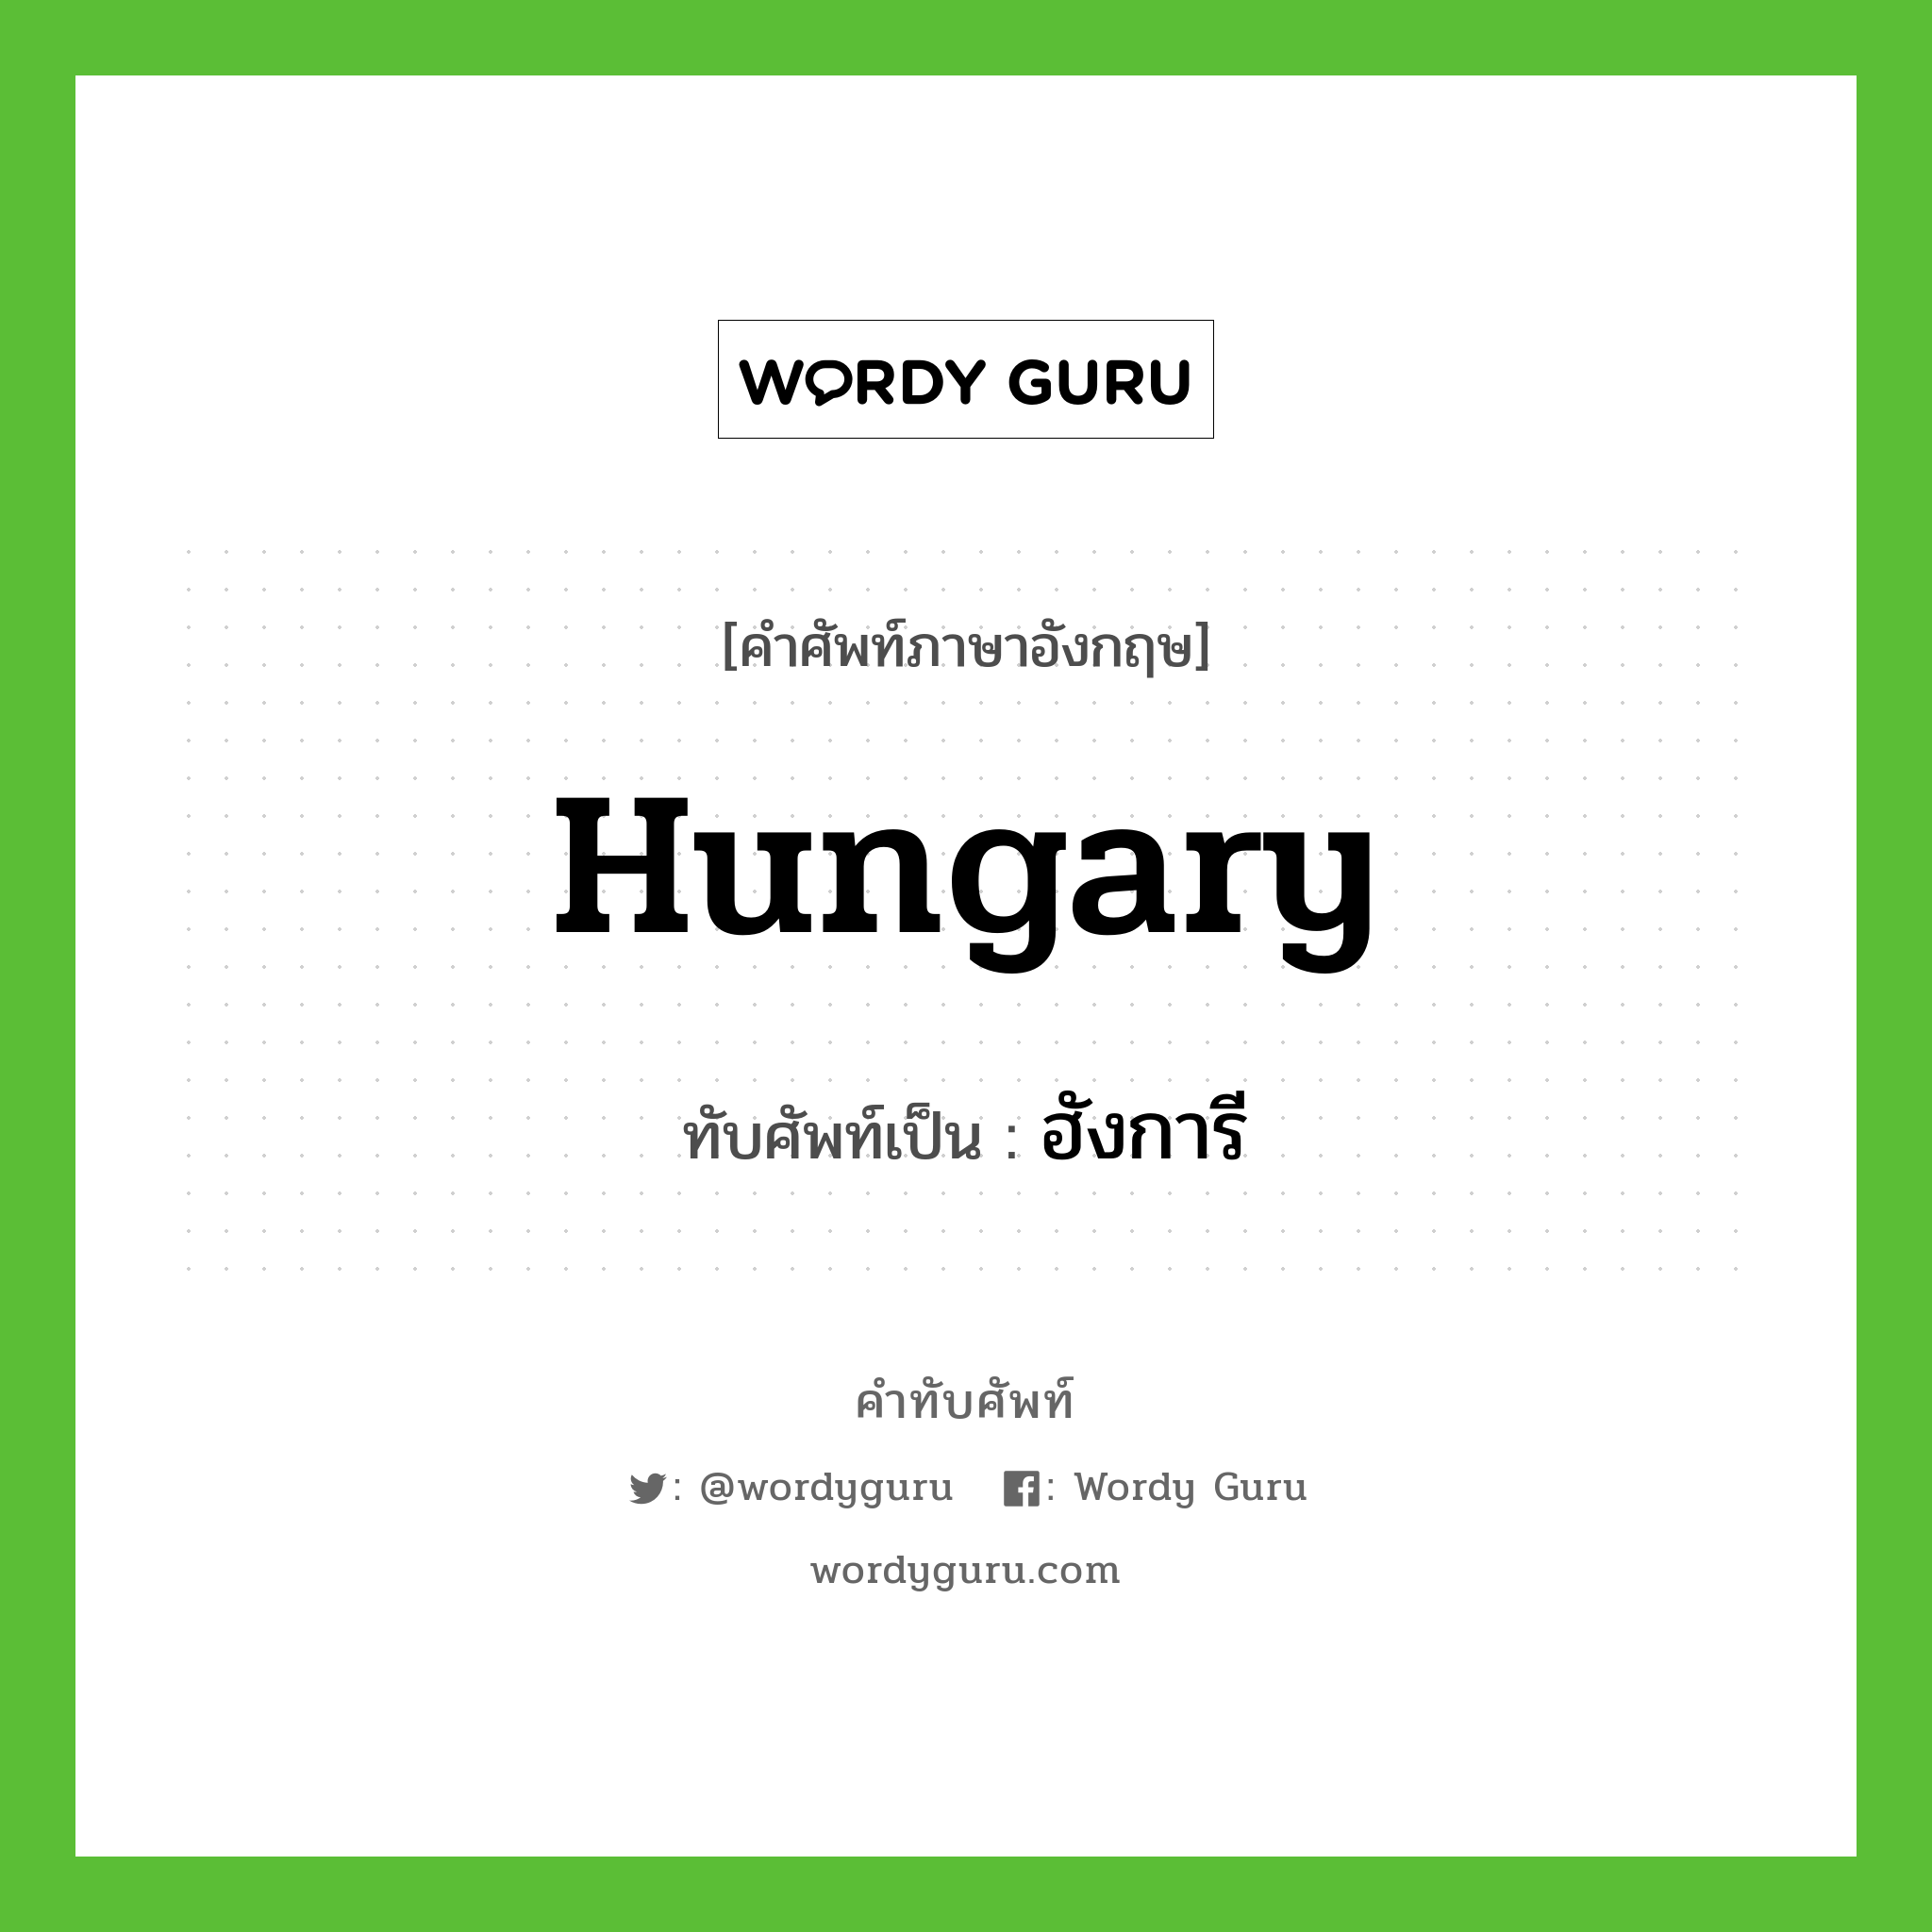 Hungary เขียนเป็นคำไทยว่าอะไร?, คำศัพท์ภาษาอังกฤษ Hungary ทับศัพท์เป็น ฮังการี